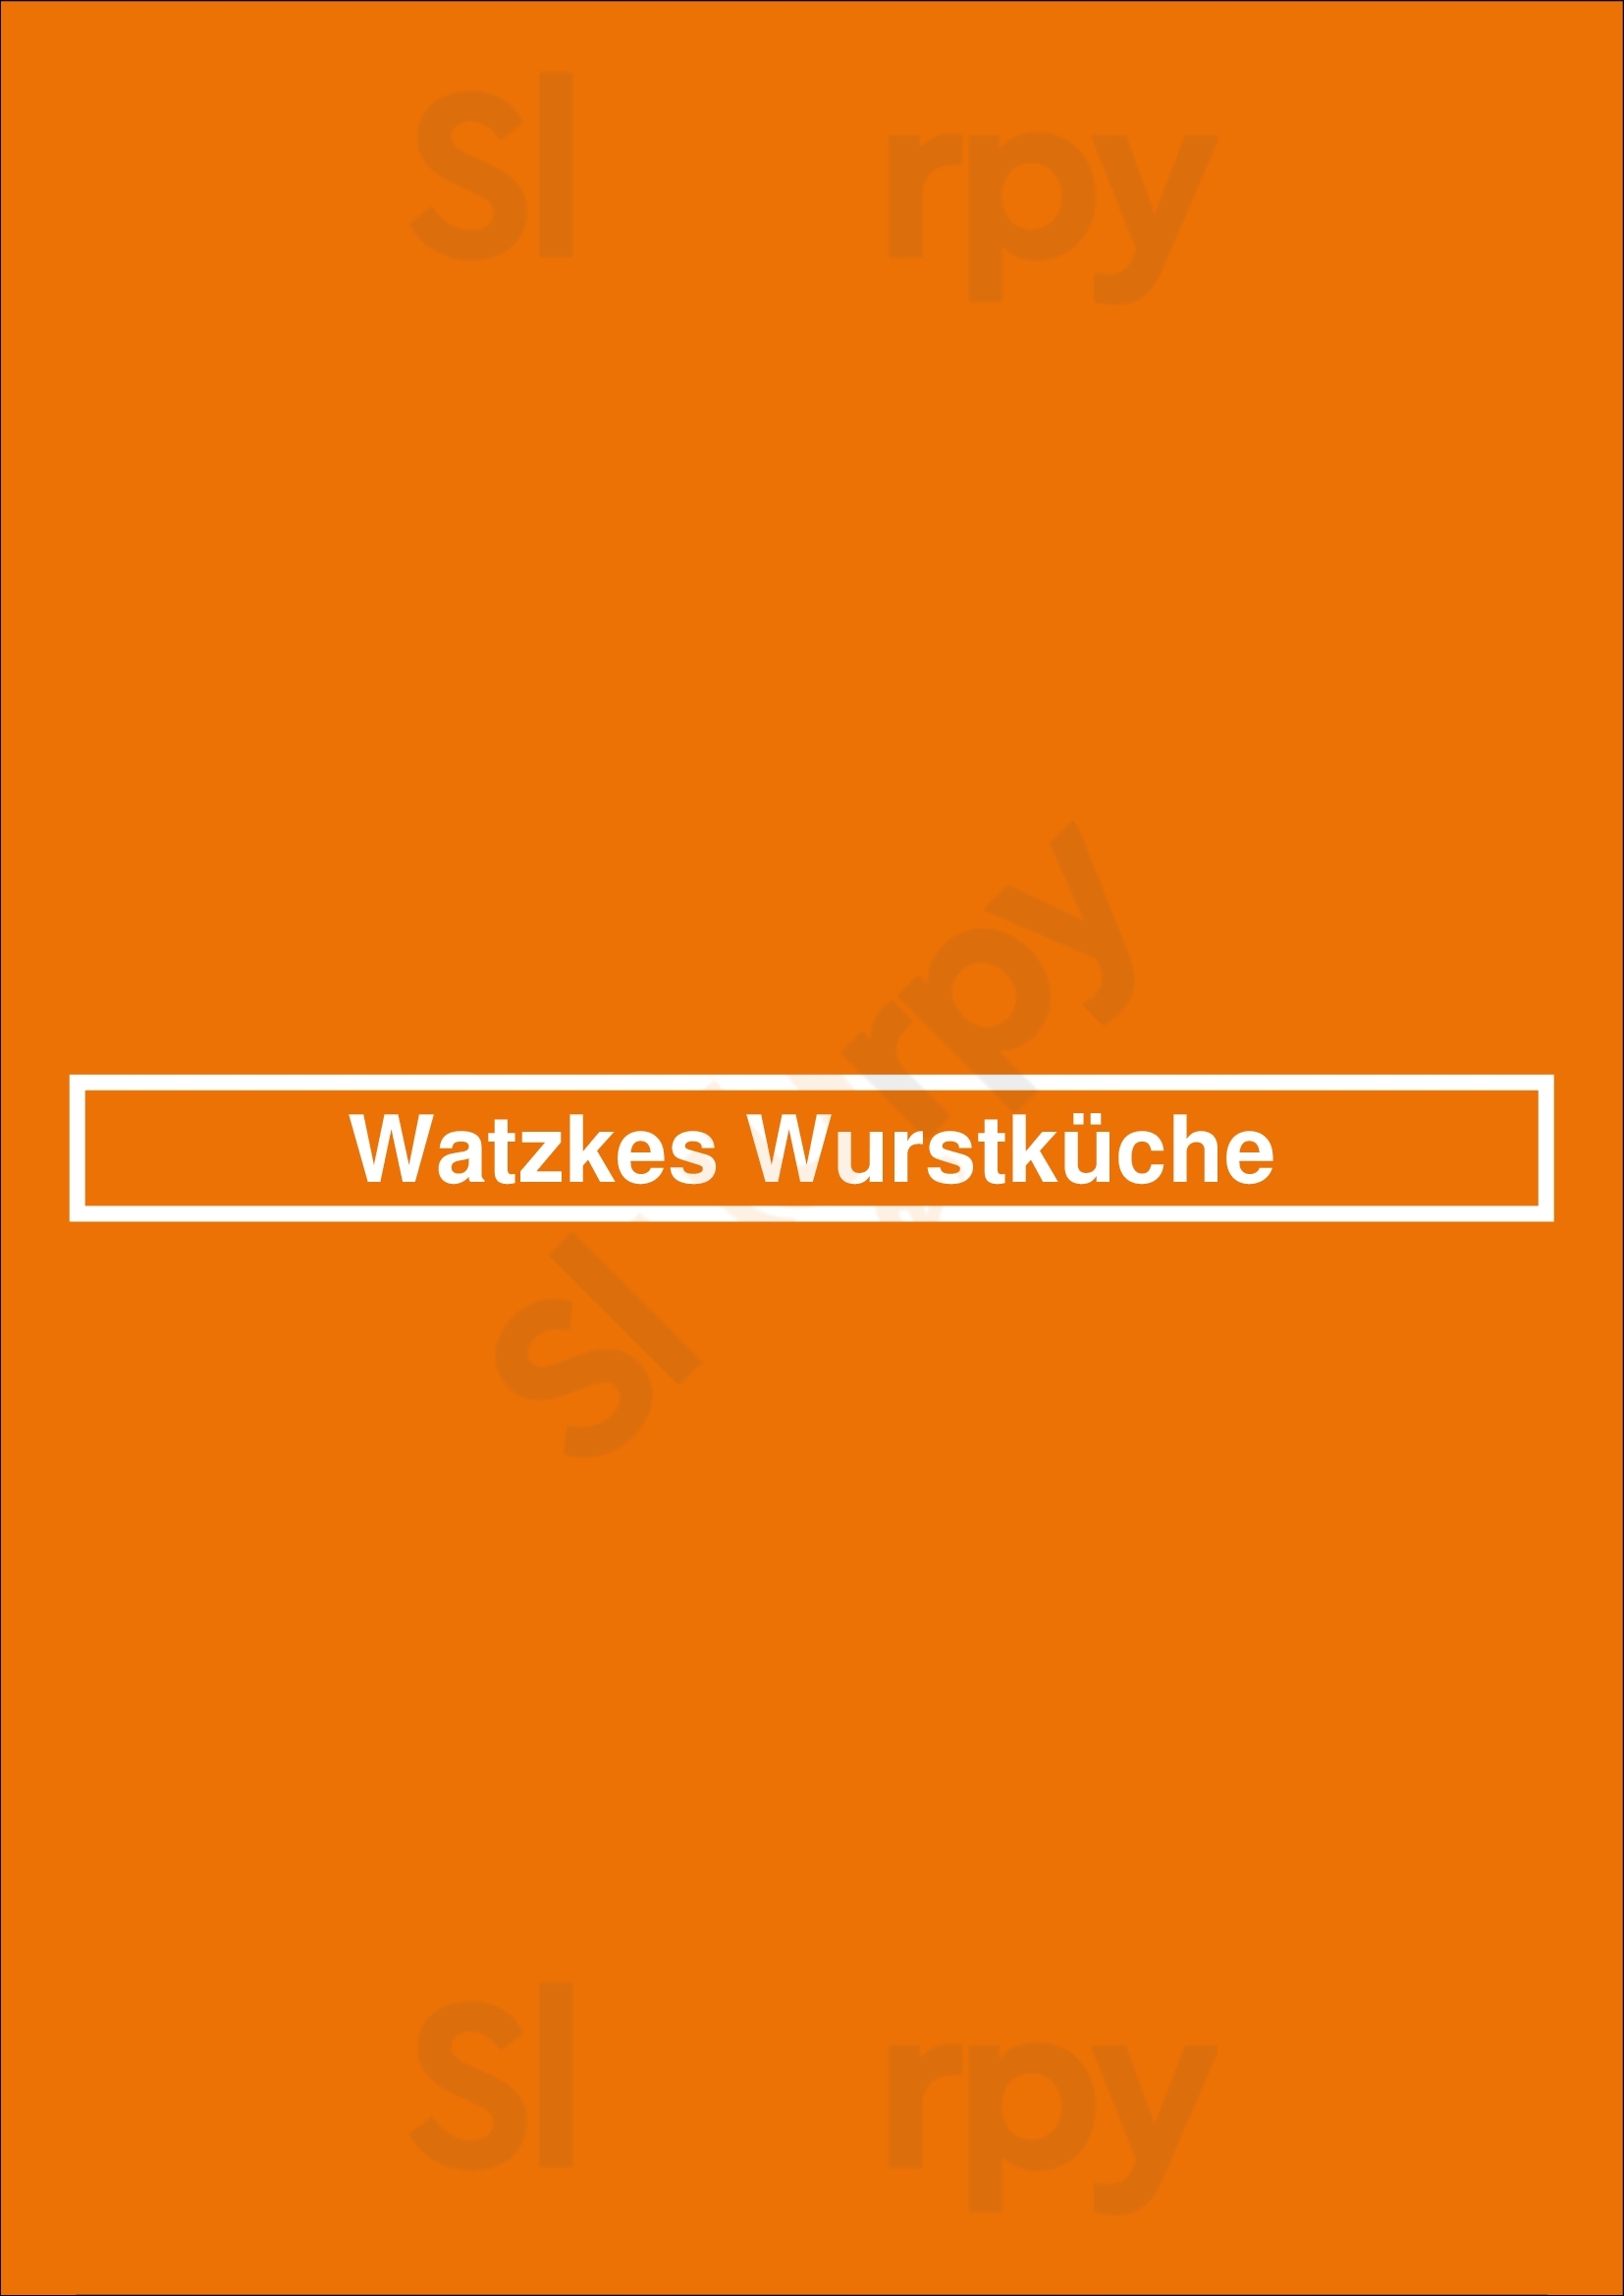 Watzkes Wurstküche Dresden Menu - 1